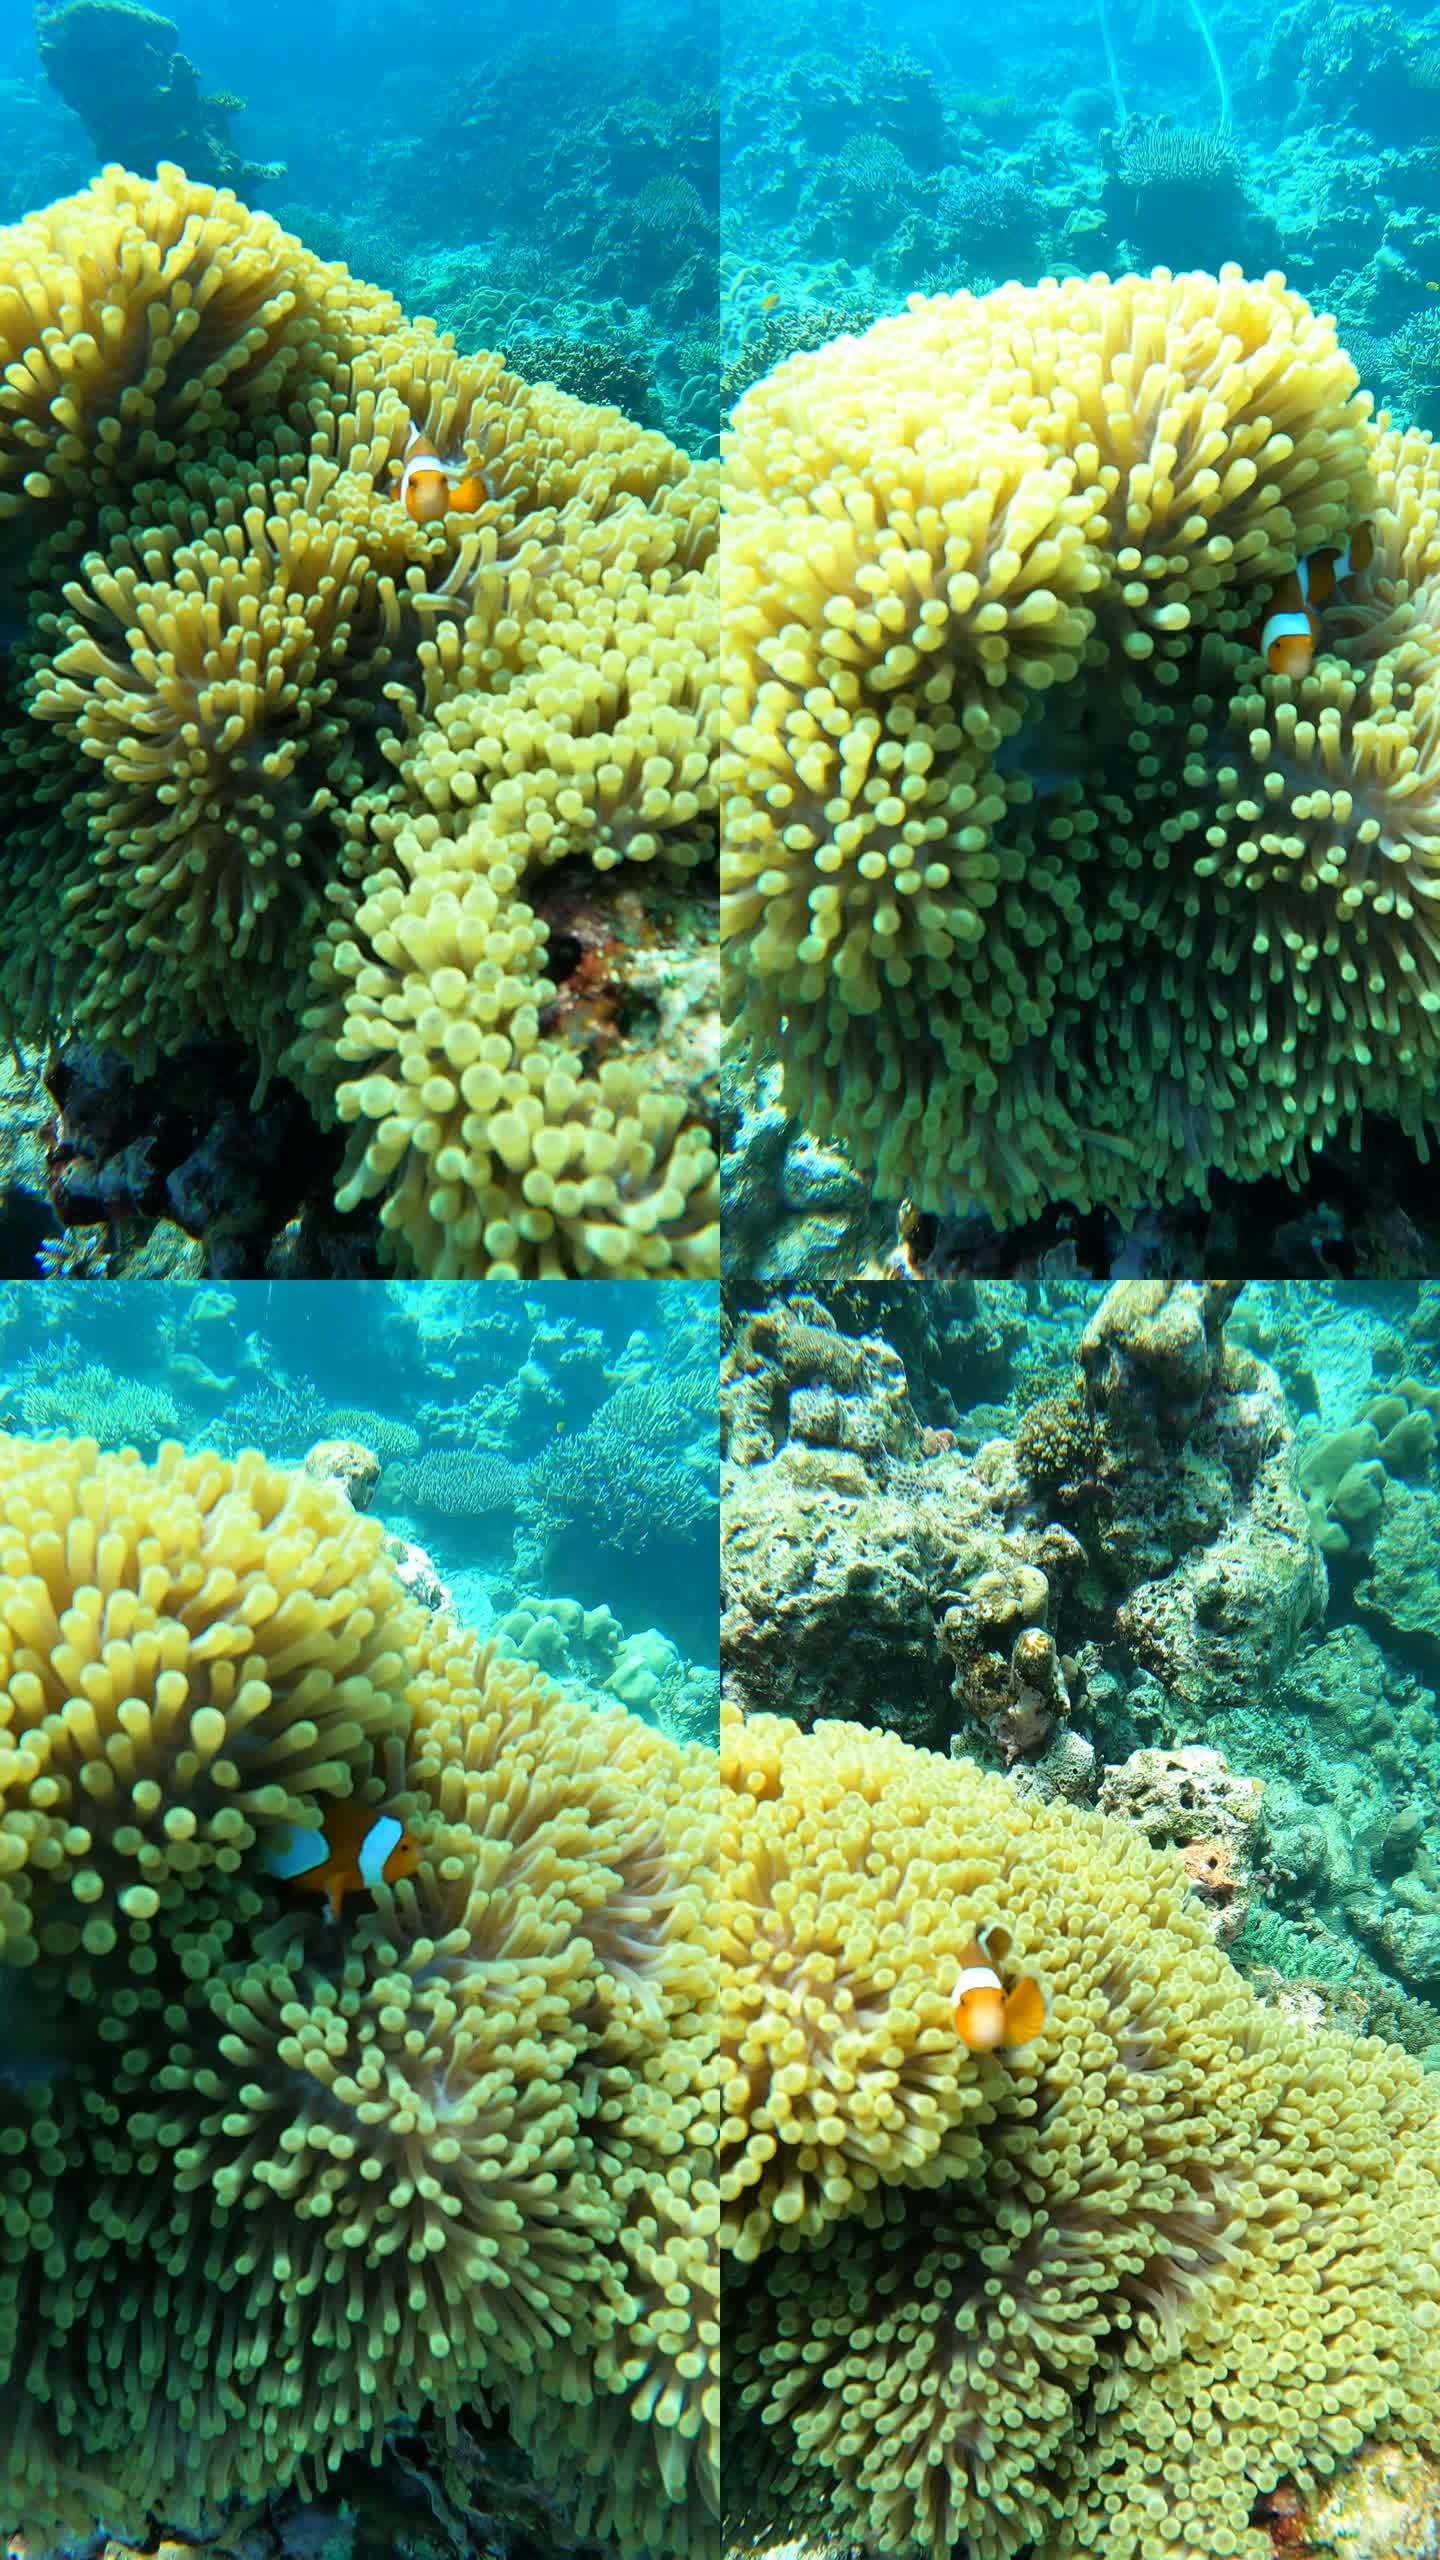 小丑鱼、海葵鱼、尼莫、水下清水、热带气候岛上的珊瑚礁